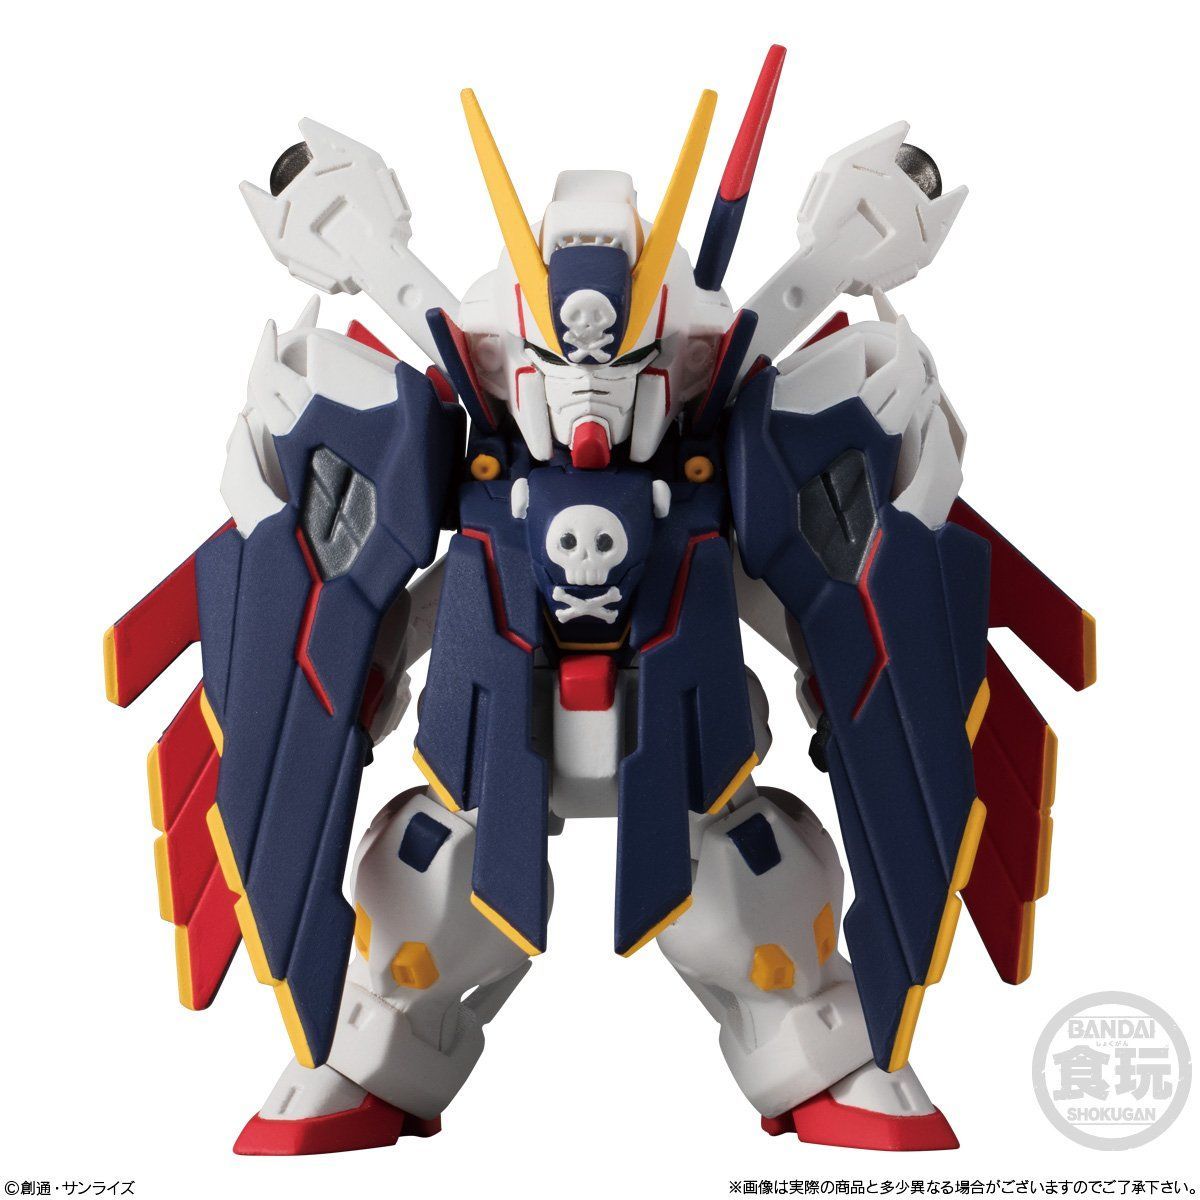 Fw Gundam Converge Ex25 クロスボーン ガンダムx1フルクロス 発売日 19年1月21日 バンダイ キャンディ公式サイト